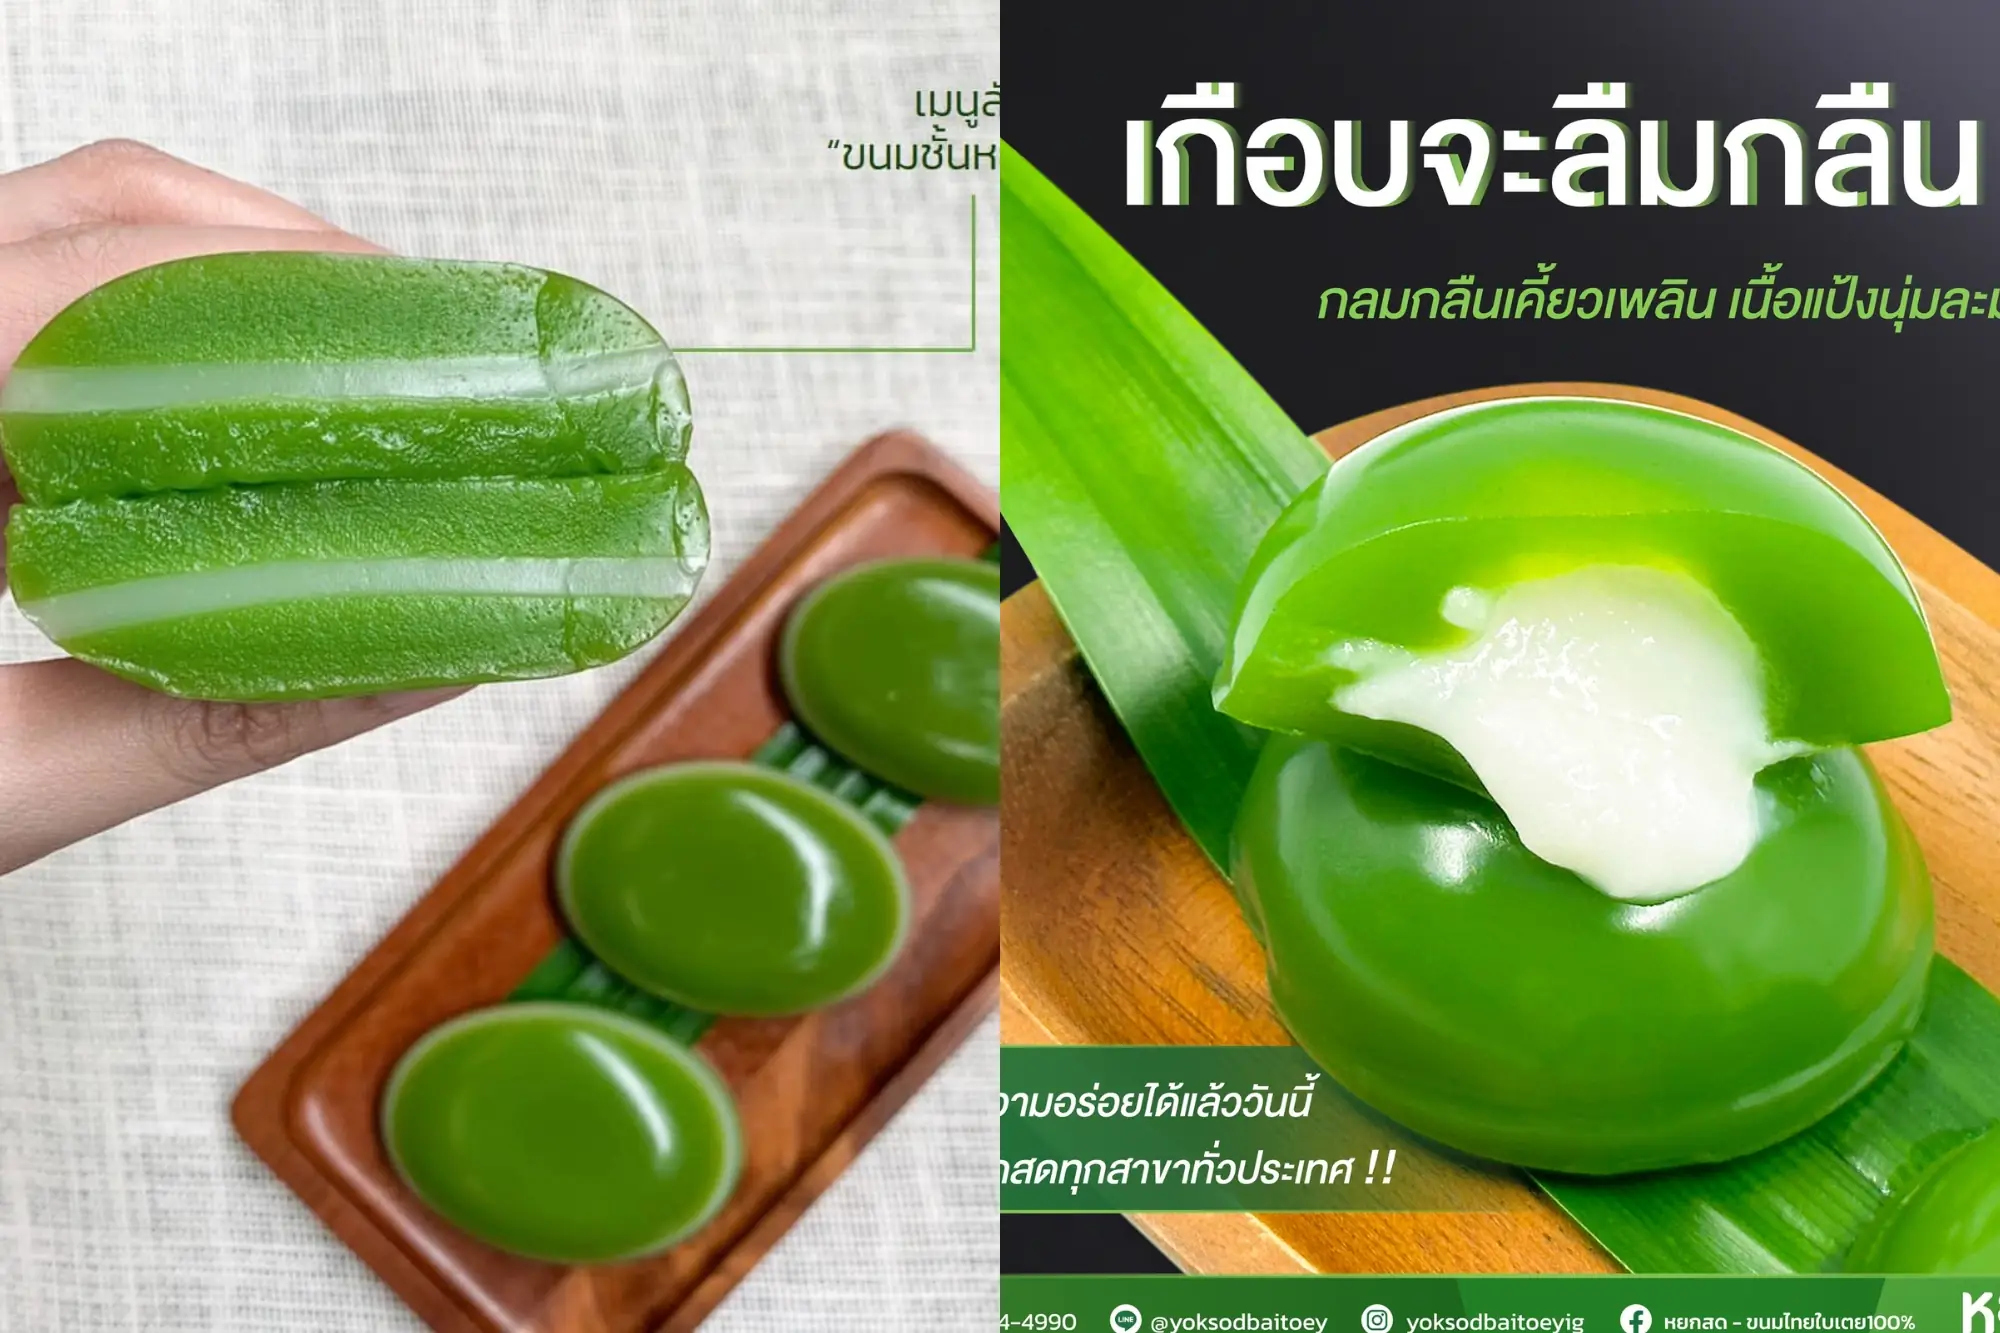 泰國人都超愛的香蘭葉甜點店Yok sod，有香蘭葉椰奶凍、布丁、麻糬...有超十多種香蘭葉甜點可以選。（來源：店家社群）